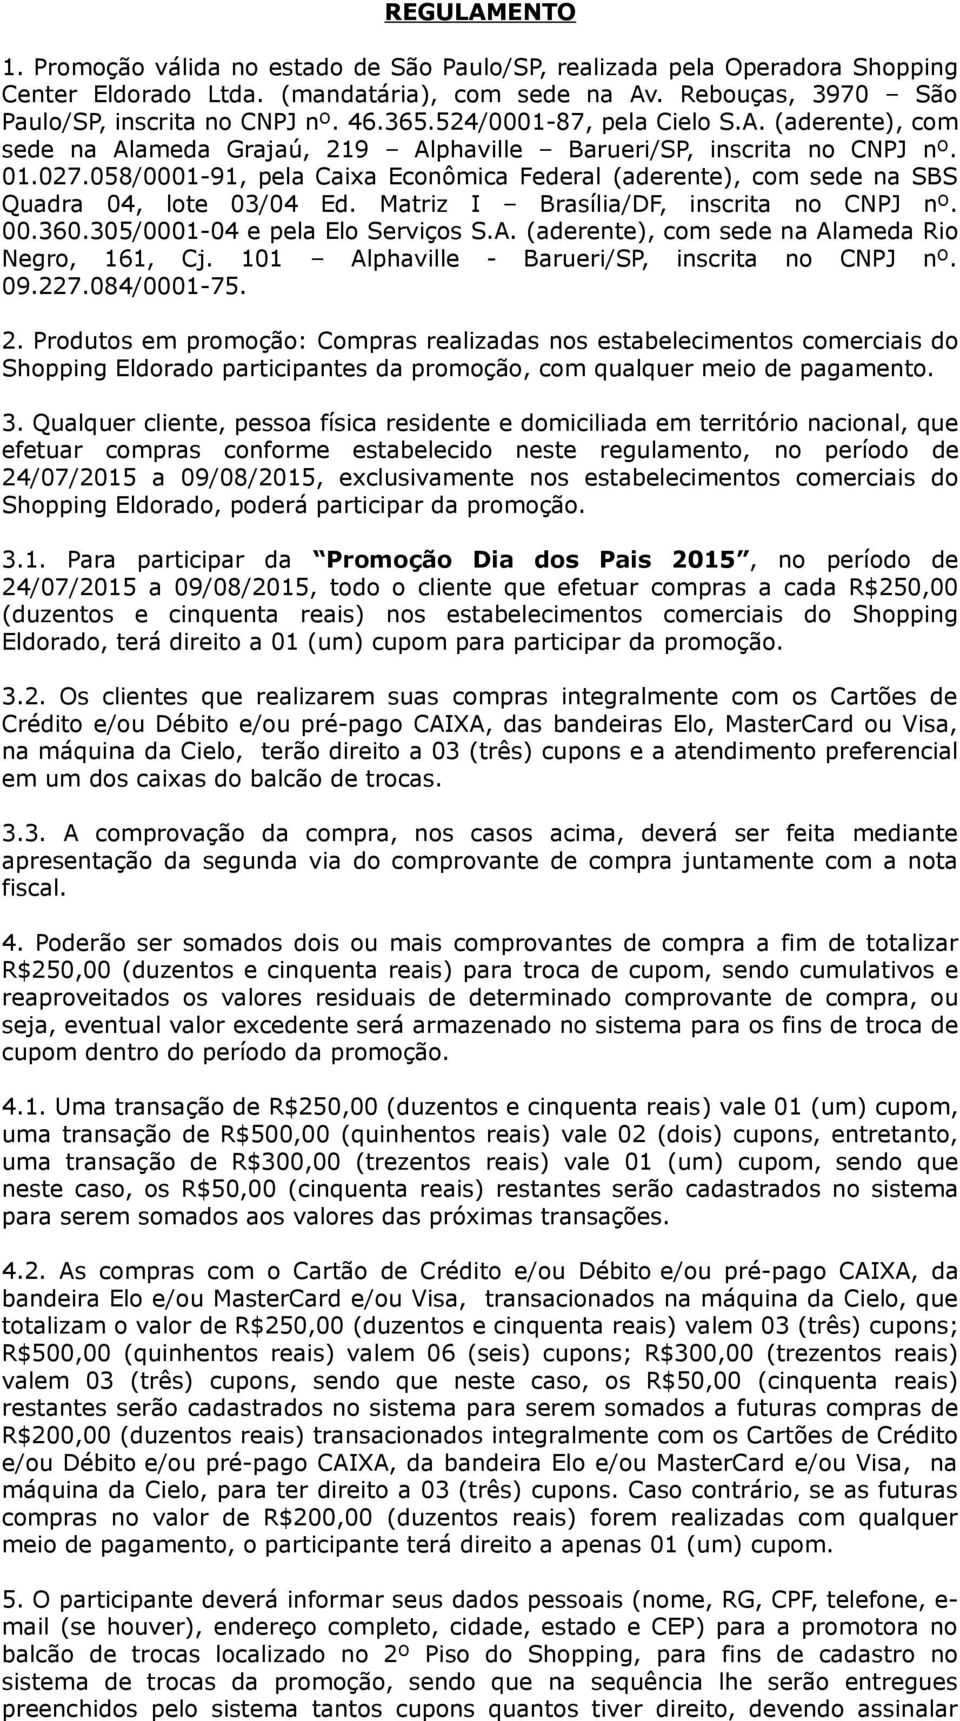 058/0001-91, pela Caixa Econômica Federal (aderente), com sede na SBS Quadra 04, lote 03/04 Ed. Matriz I Brasília/DF, inscrita no CNPJ nº. 00.360.305/0001-04 e pela Elo Serviços S.A.